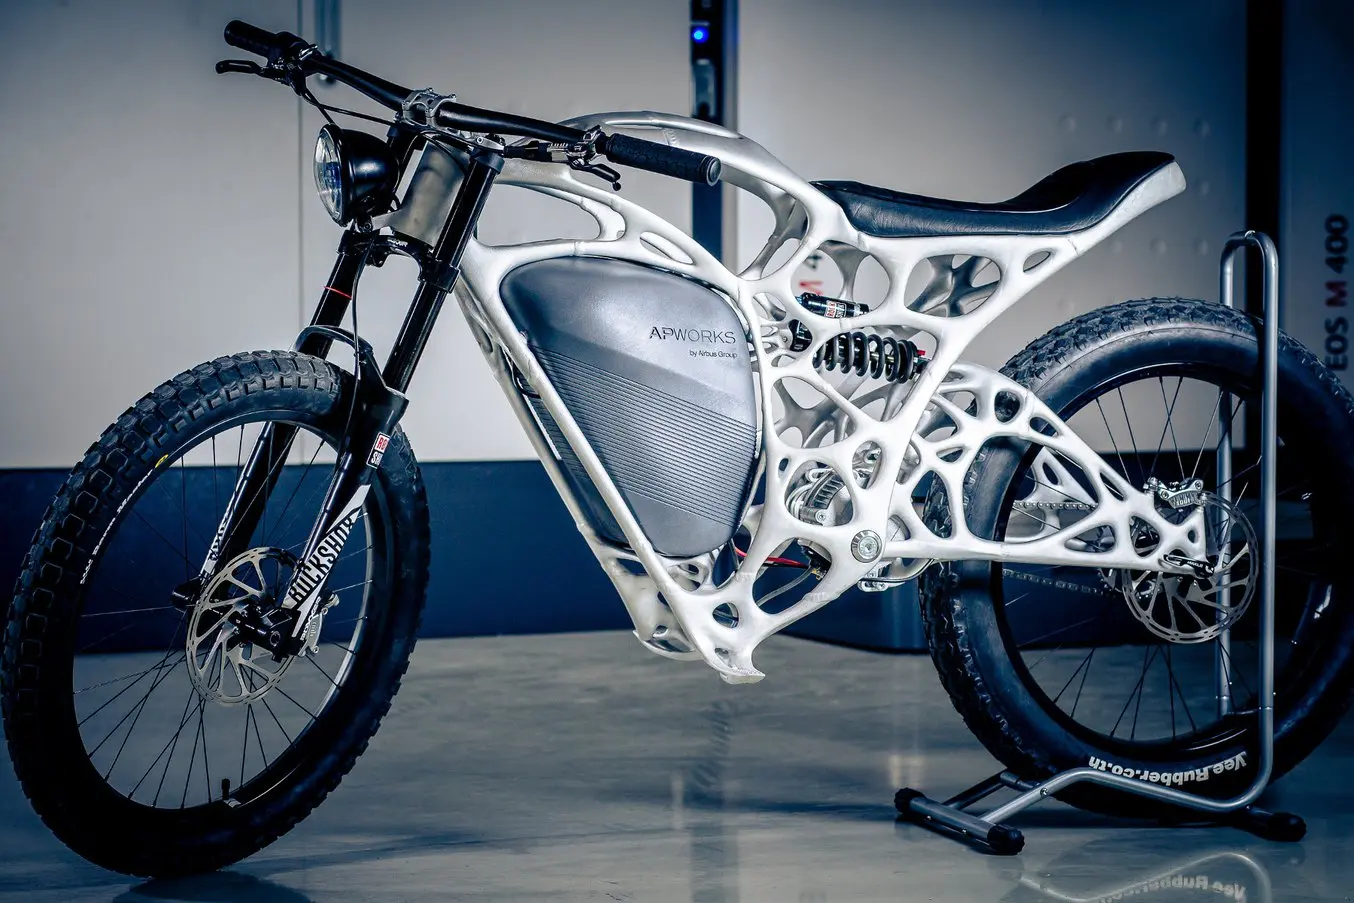 Mittels Topologieoptimierung konstruierte Leichtbauweise eines Motorradrahmens, der mit metallbasiertem 3D-Druck gefertigt wurde (Quelle)